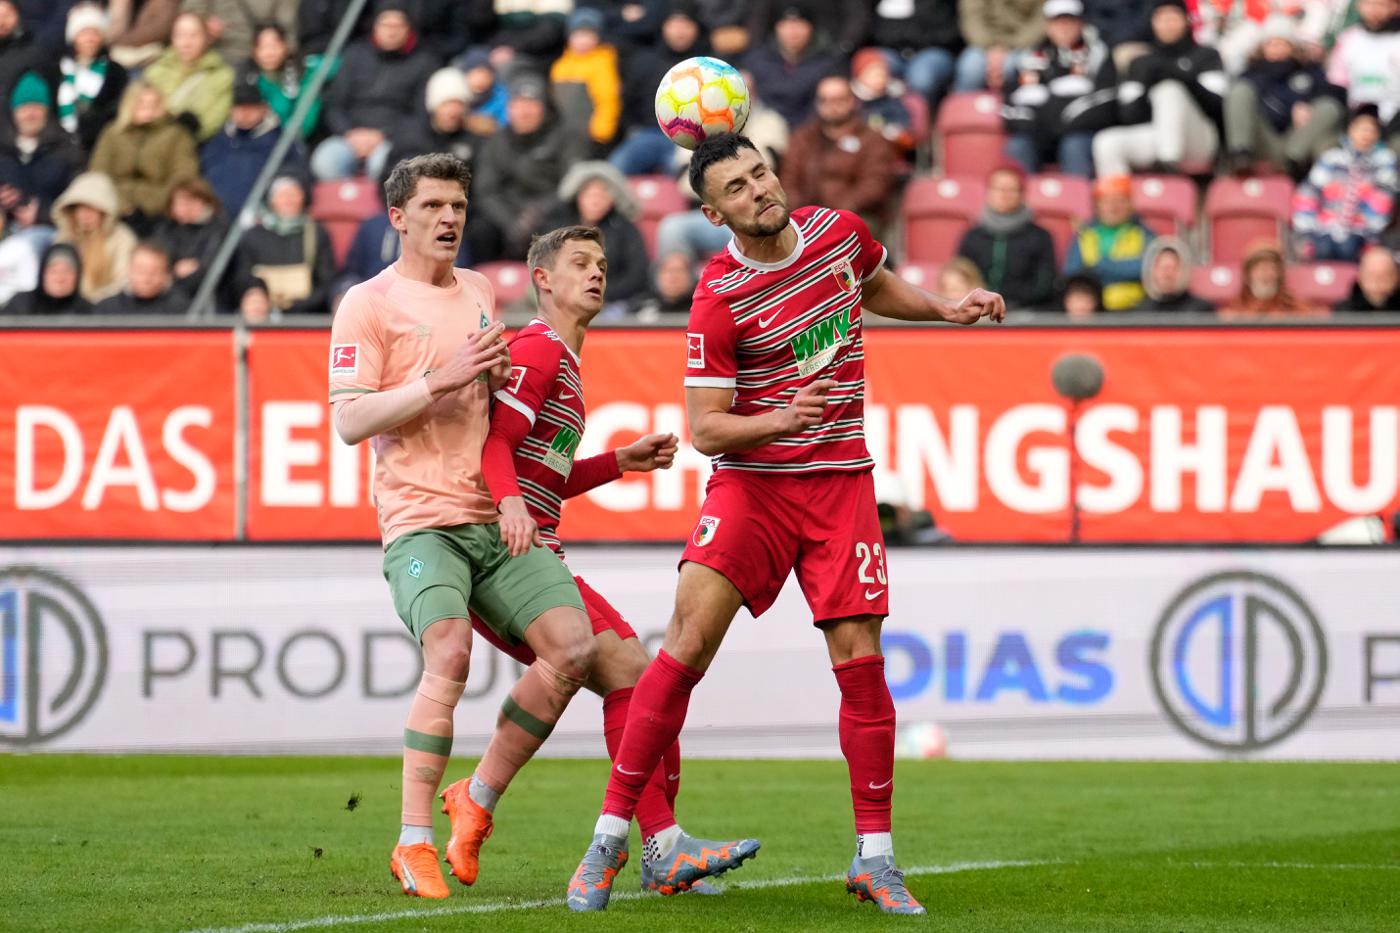 Augsburg - Werder - 2:1. German Championship, round 23. Match Review, Statistics